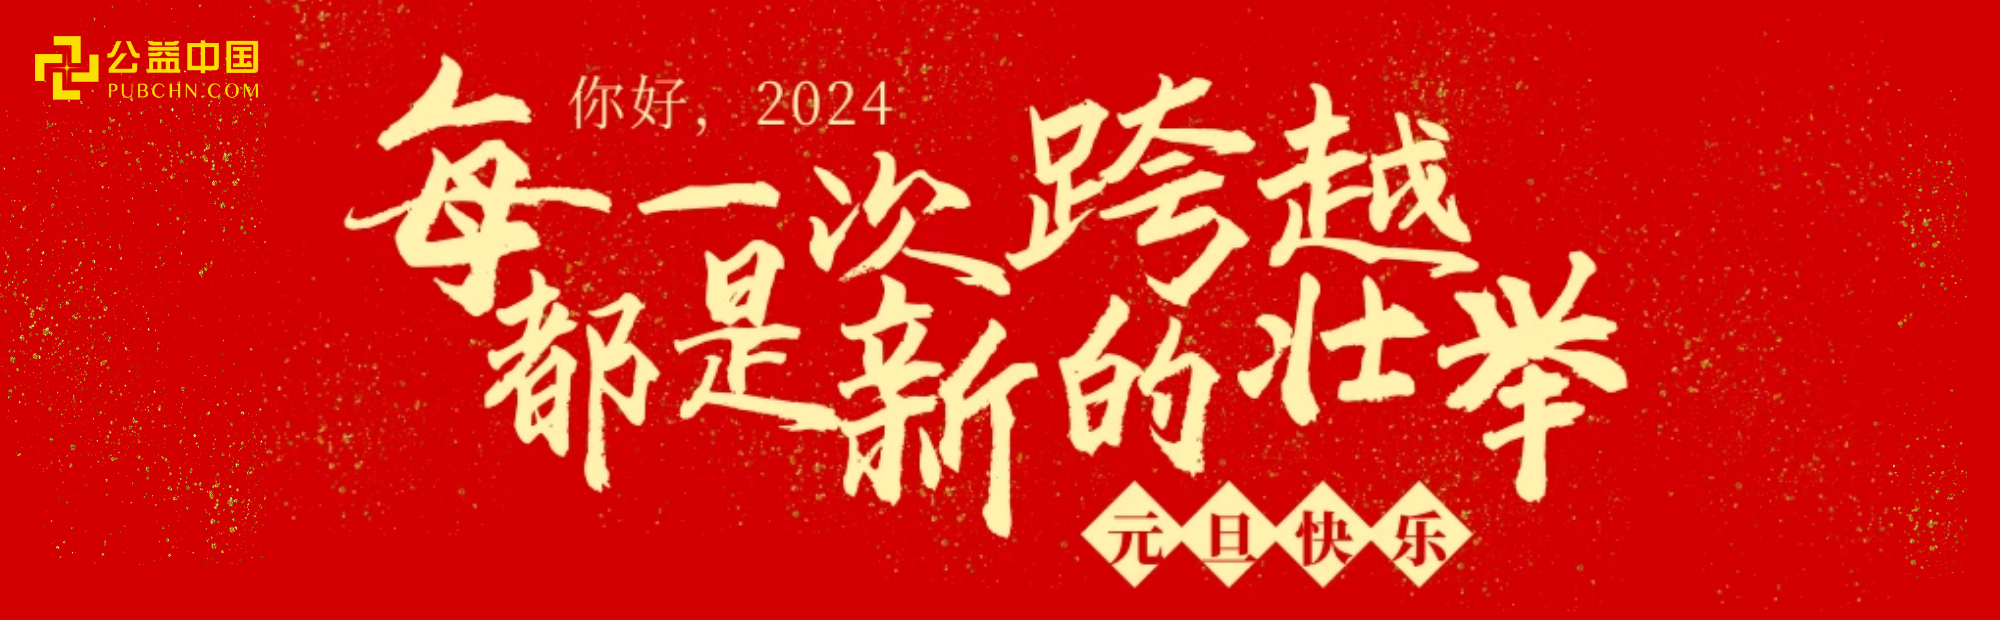 2024，公益中国网与你 “益”起奔赴美好！